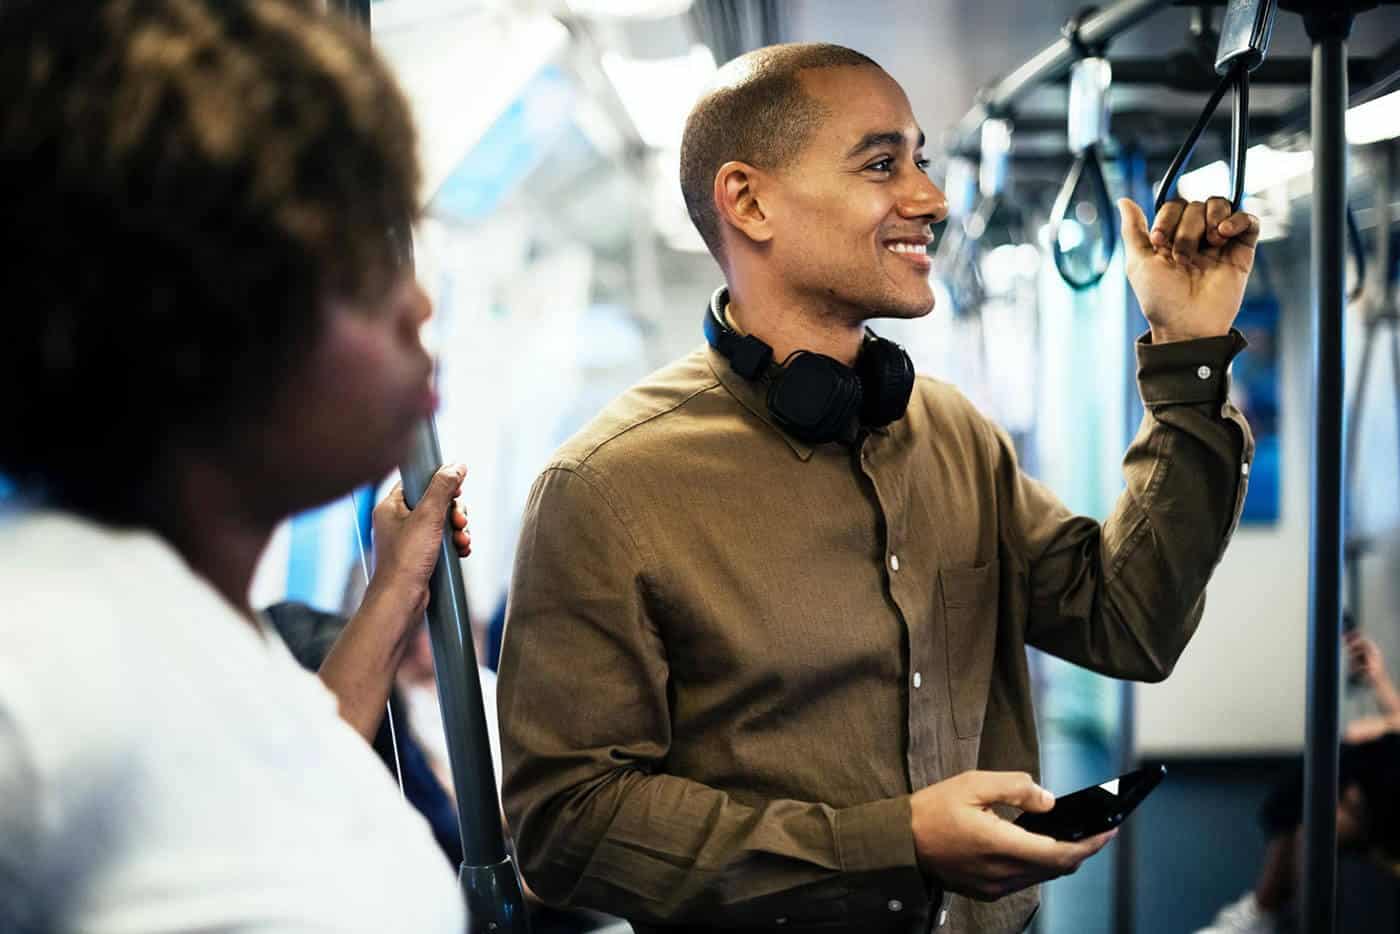 man smiling on subway